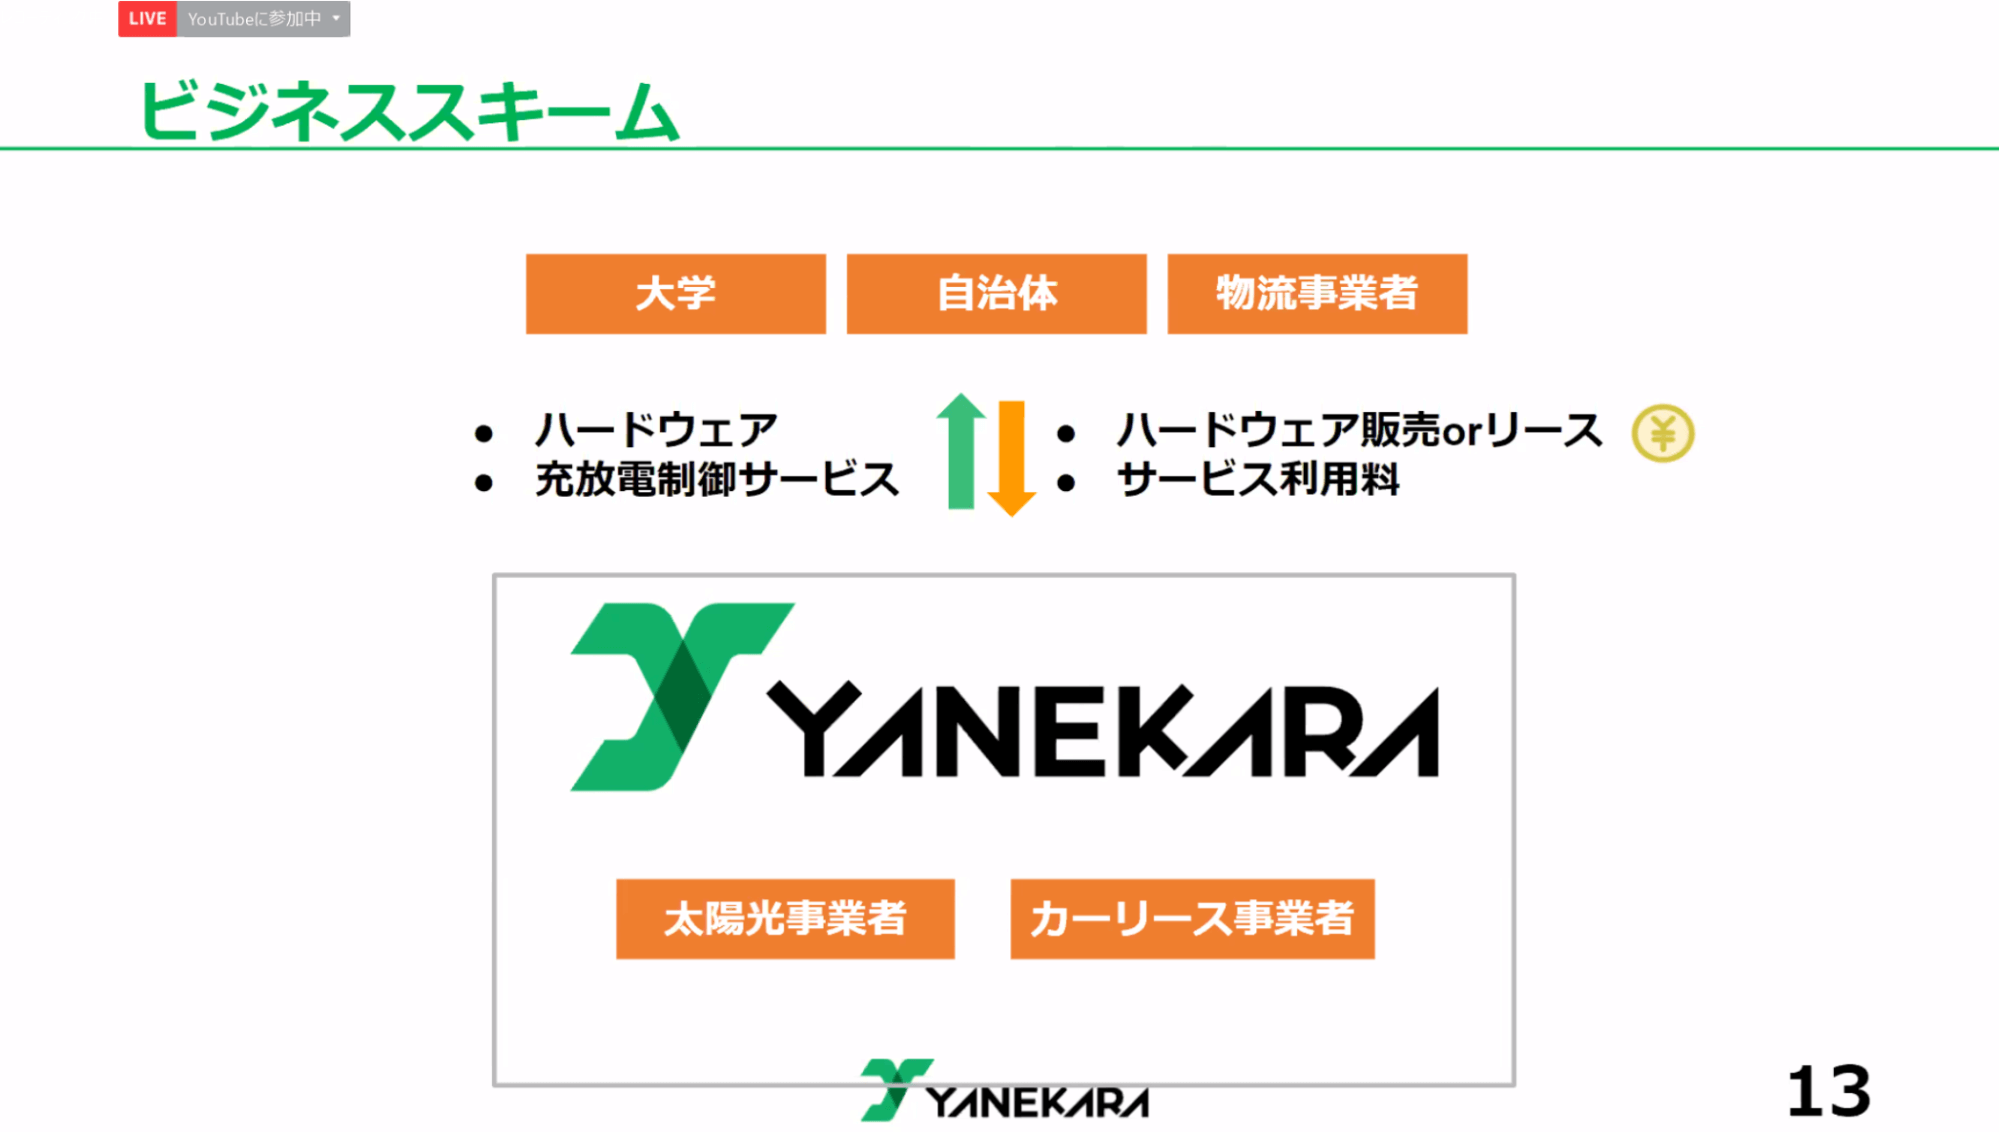 Yanekaraのビジネススキーム